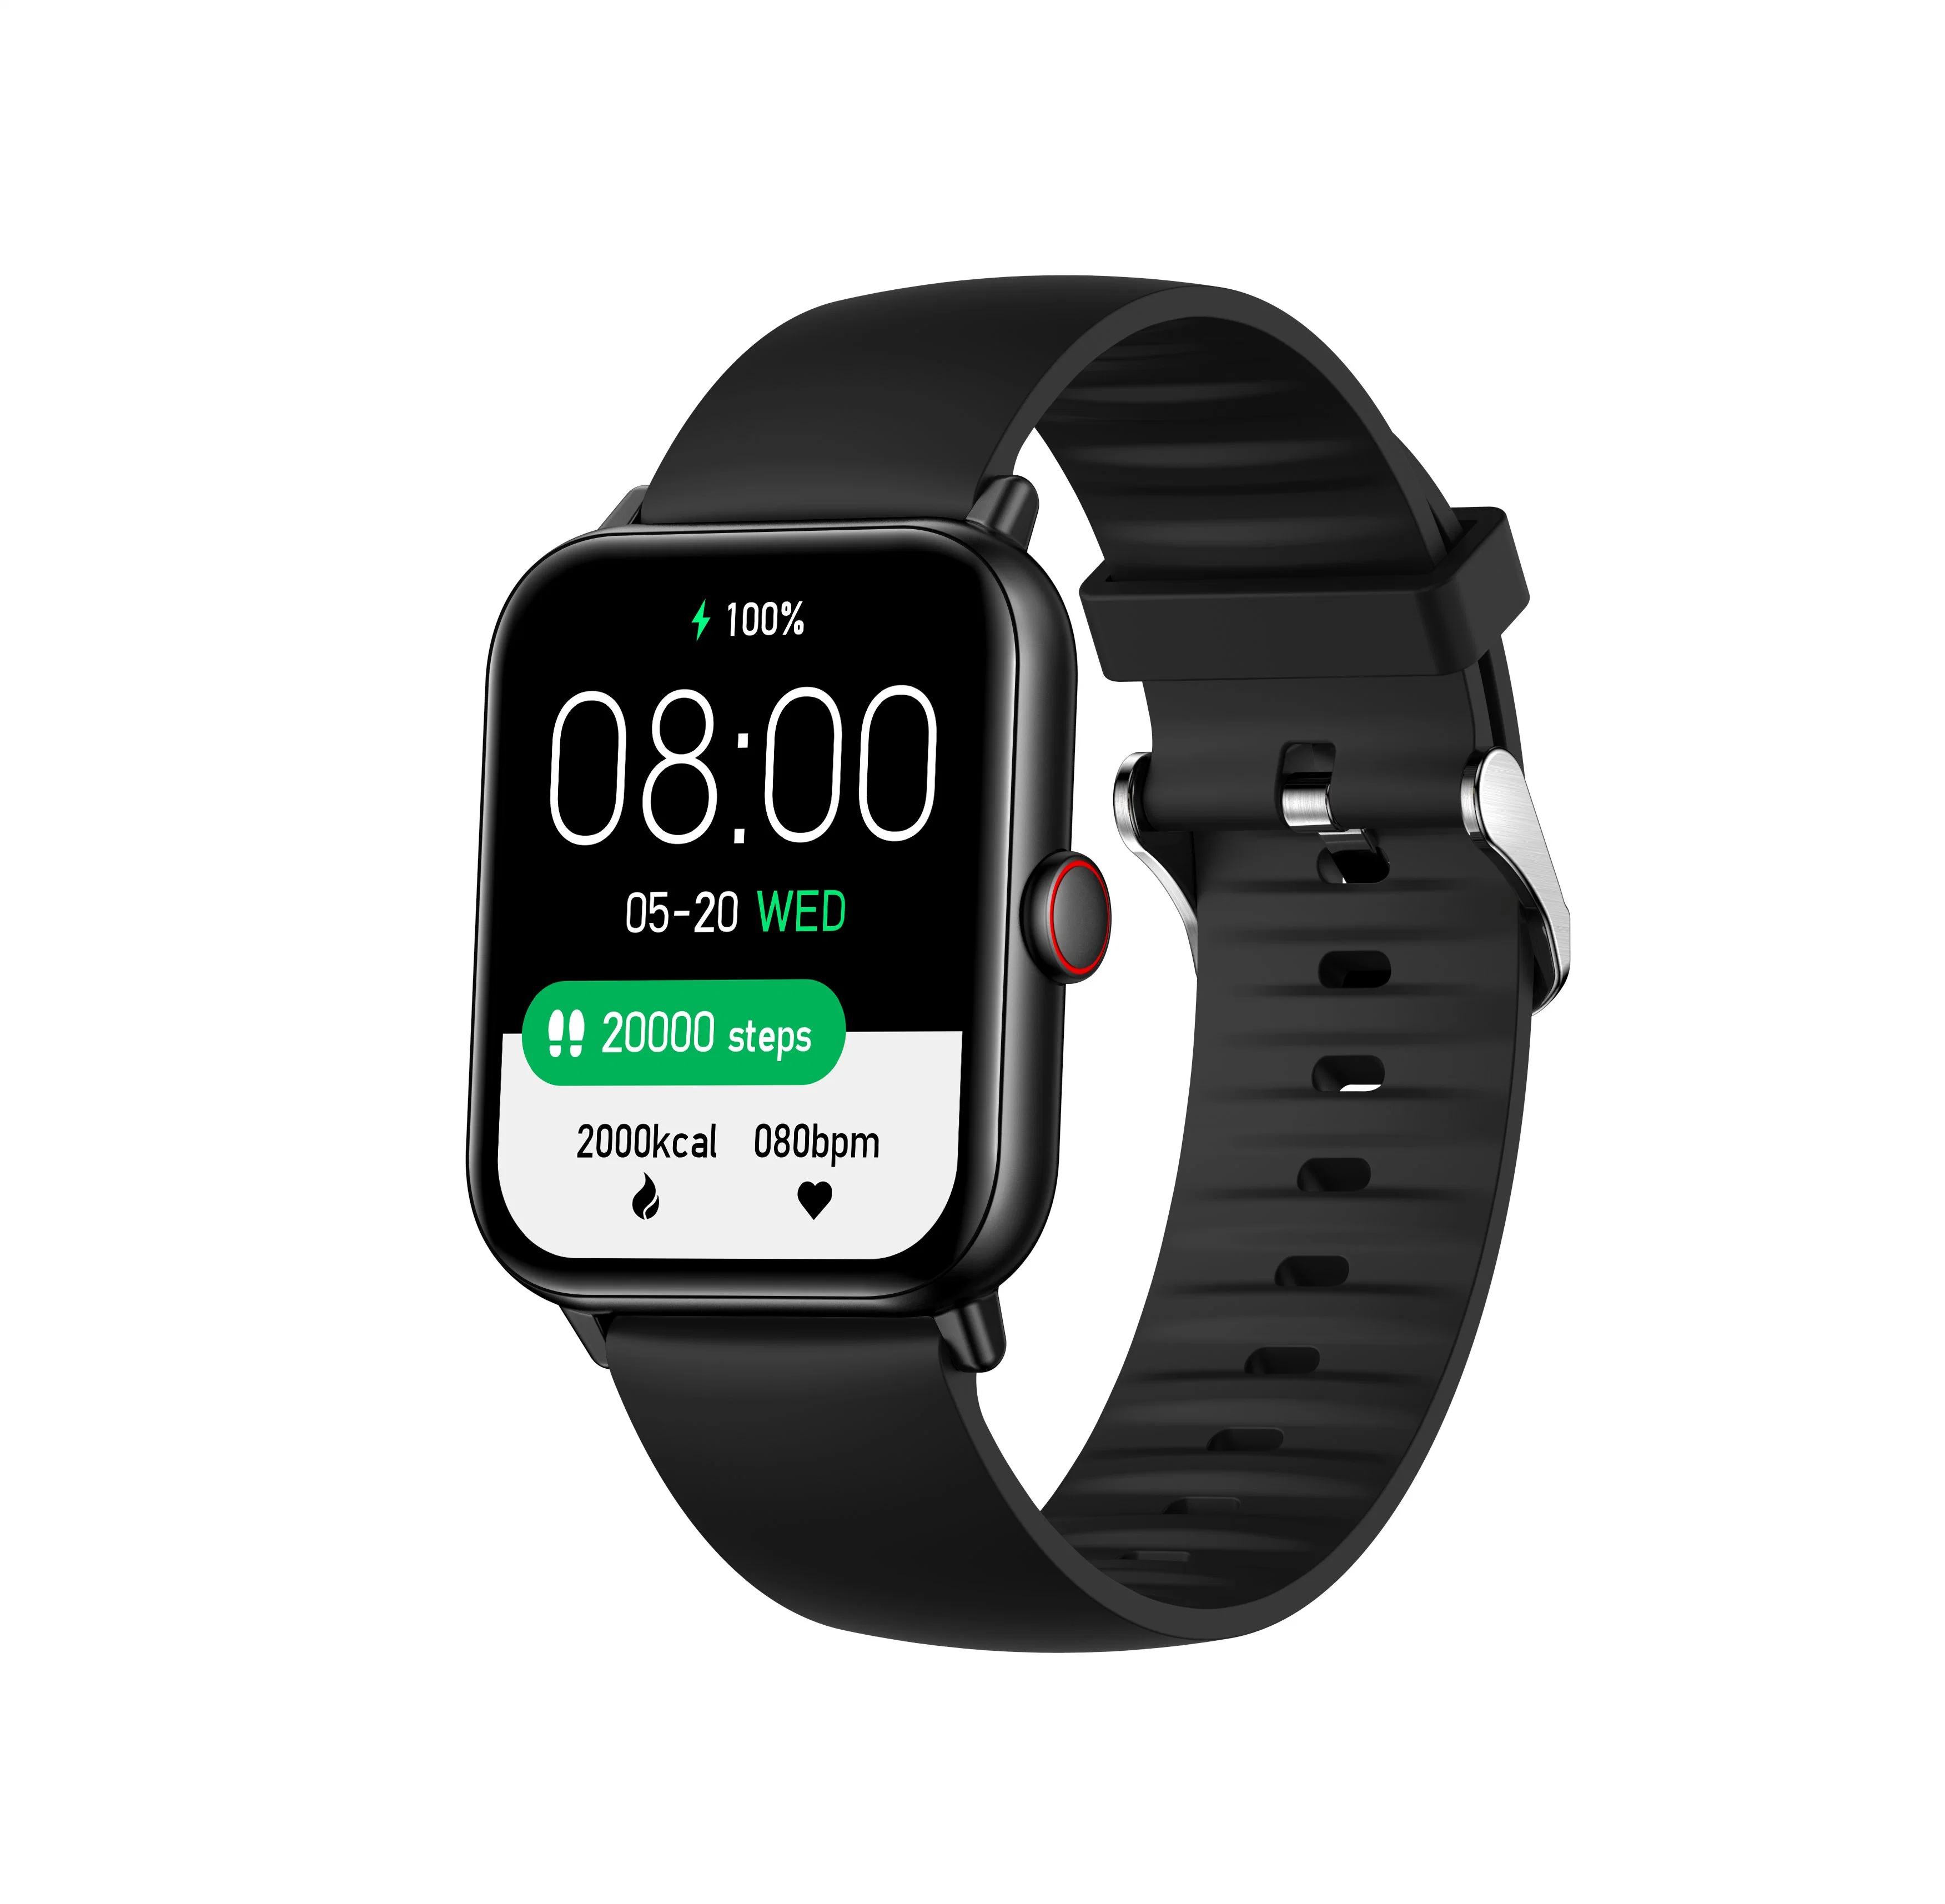 Smartwatch 8 Seires 8 Smartwatch Support Bluetooth-Wählverfahren Kabelloses Laden NFC Split Display kompatibel iOS und Android Smartphones